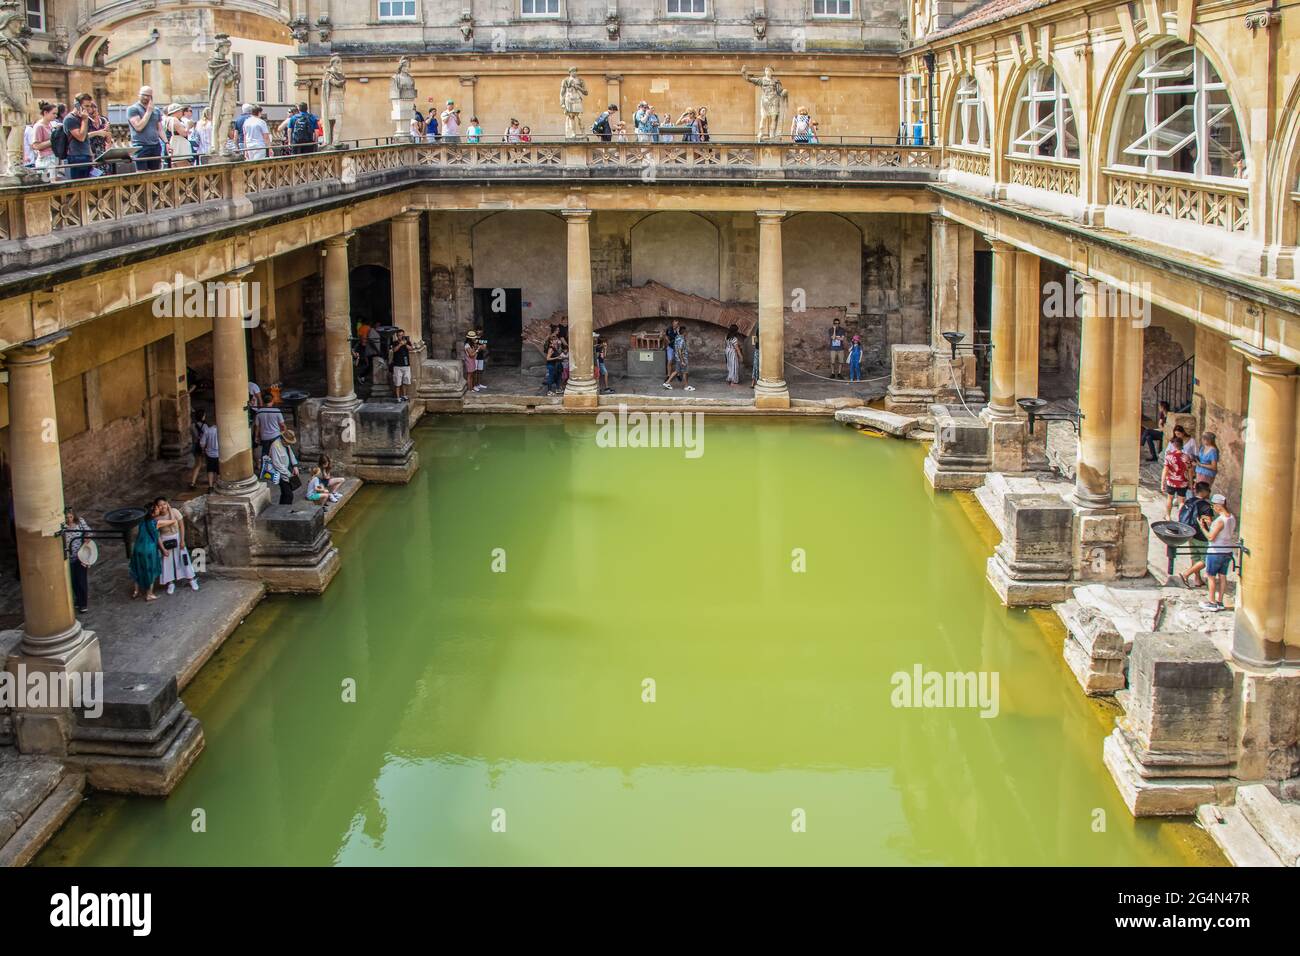 7 25 2019Bath UK antichi bagni romani con acqua molto verde in giornata di sole - vista dall'alto con i turisti su due livelli - la maggior parte su telefoni o prendendo foto Foto Stock